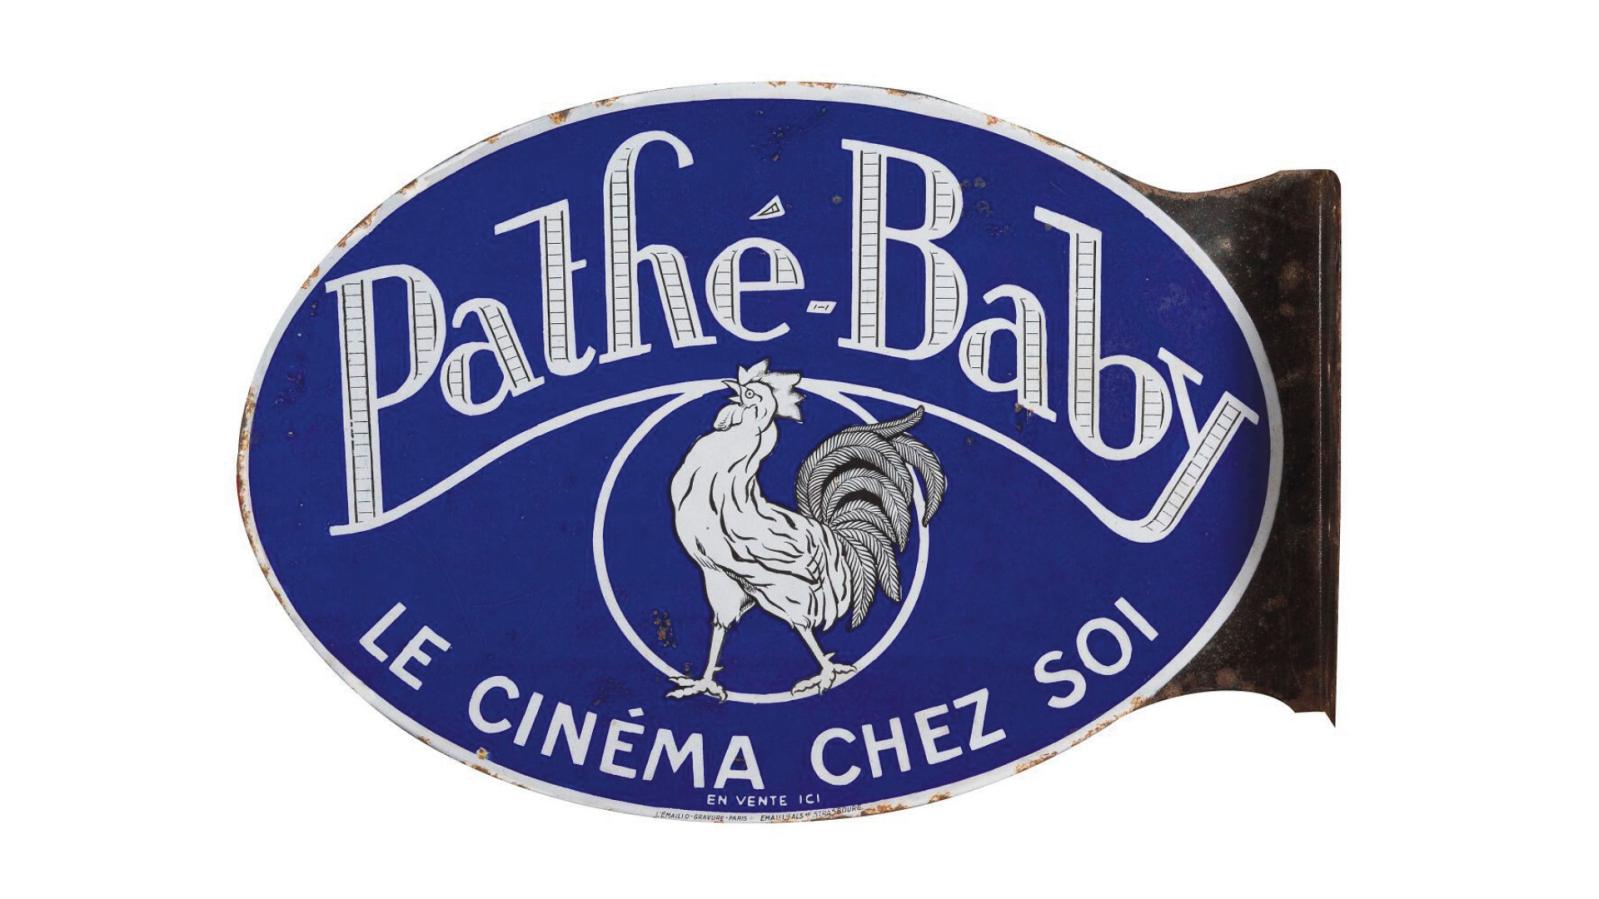 875 € «Pathé-Baby, le cinéma chez soi», plaque émaillée double face, Émaillerie alsacienne de Strasbourg, 37,5 x 54 cm. Bordeaux, 16 juin 